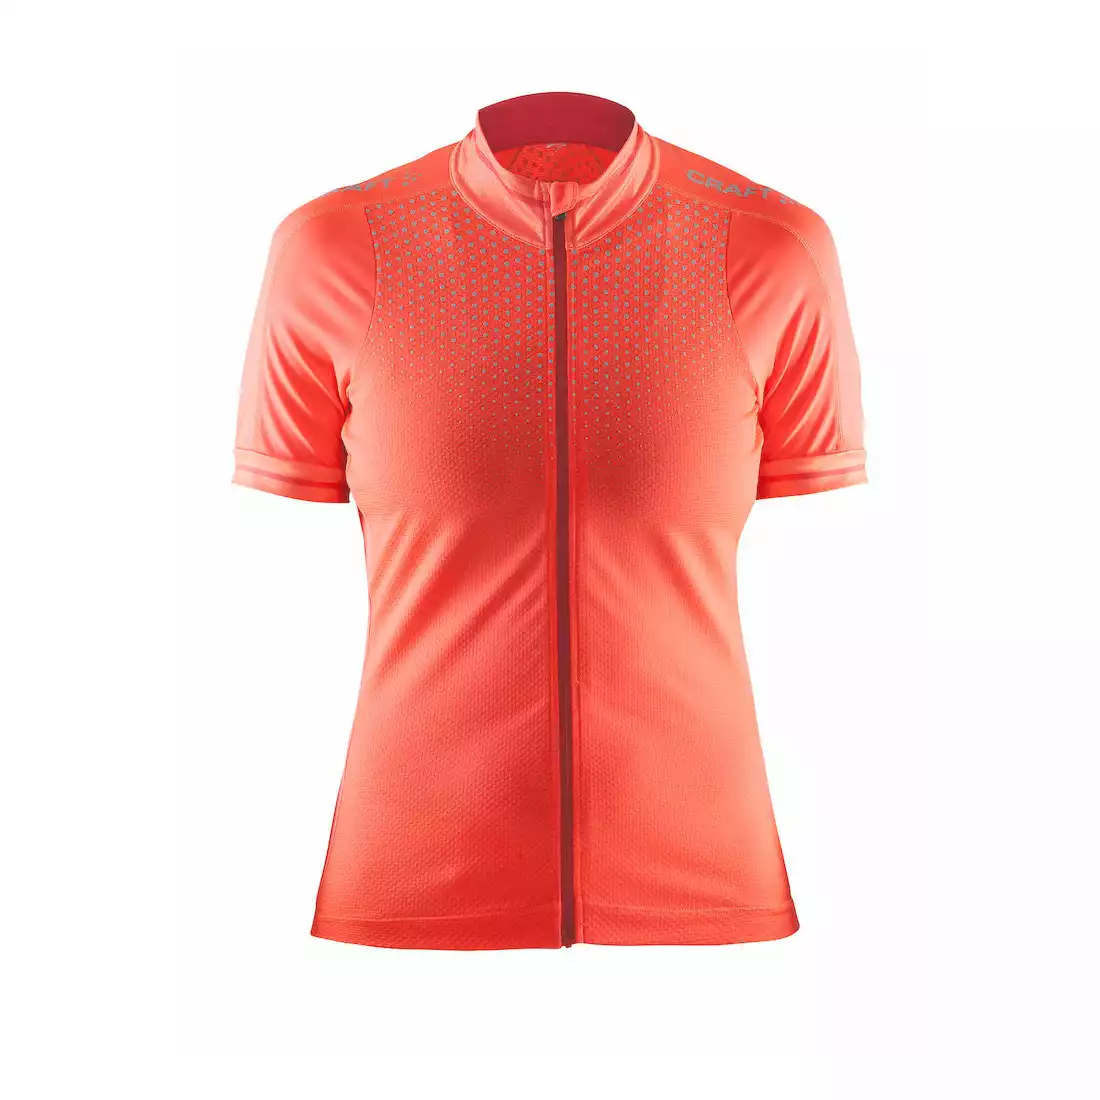 CRAFT GLOW damska koszulka rowerowa 1903265-2825 (fluorowy pomarańczowy)